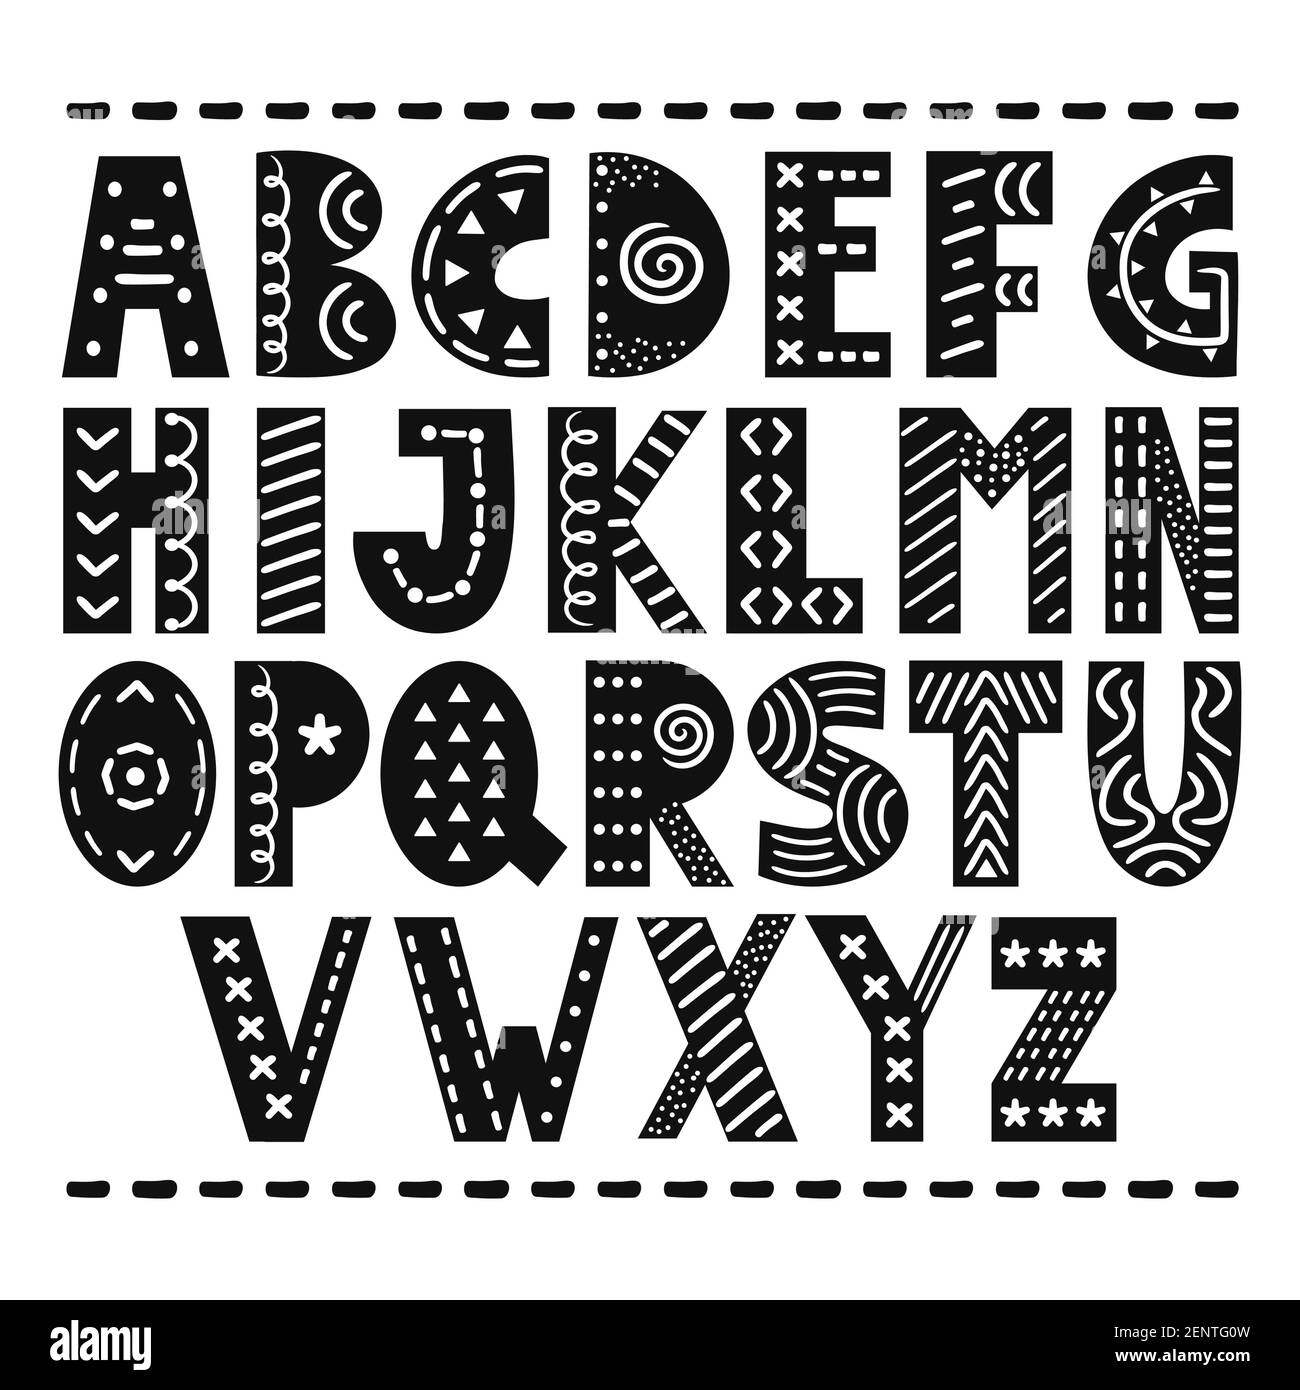 ABC skandinavischen Stil Alphabet. Vektor monochrome einfache Cartoon Illustration Symbol. Handgezeichnetes Kinderzimmer-Poster mit handgezeichneten Buchstaben im skandinavischen Stil. Stock Vektor